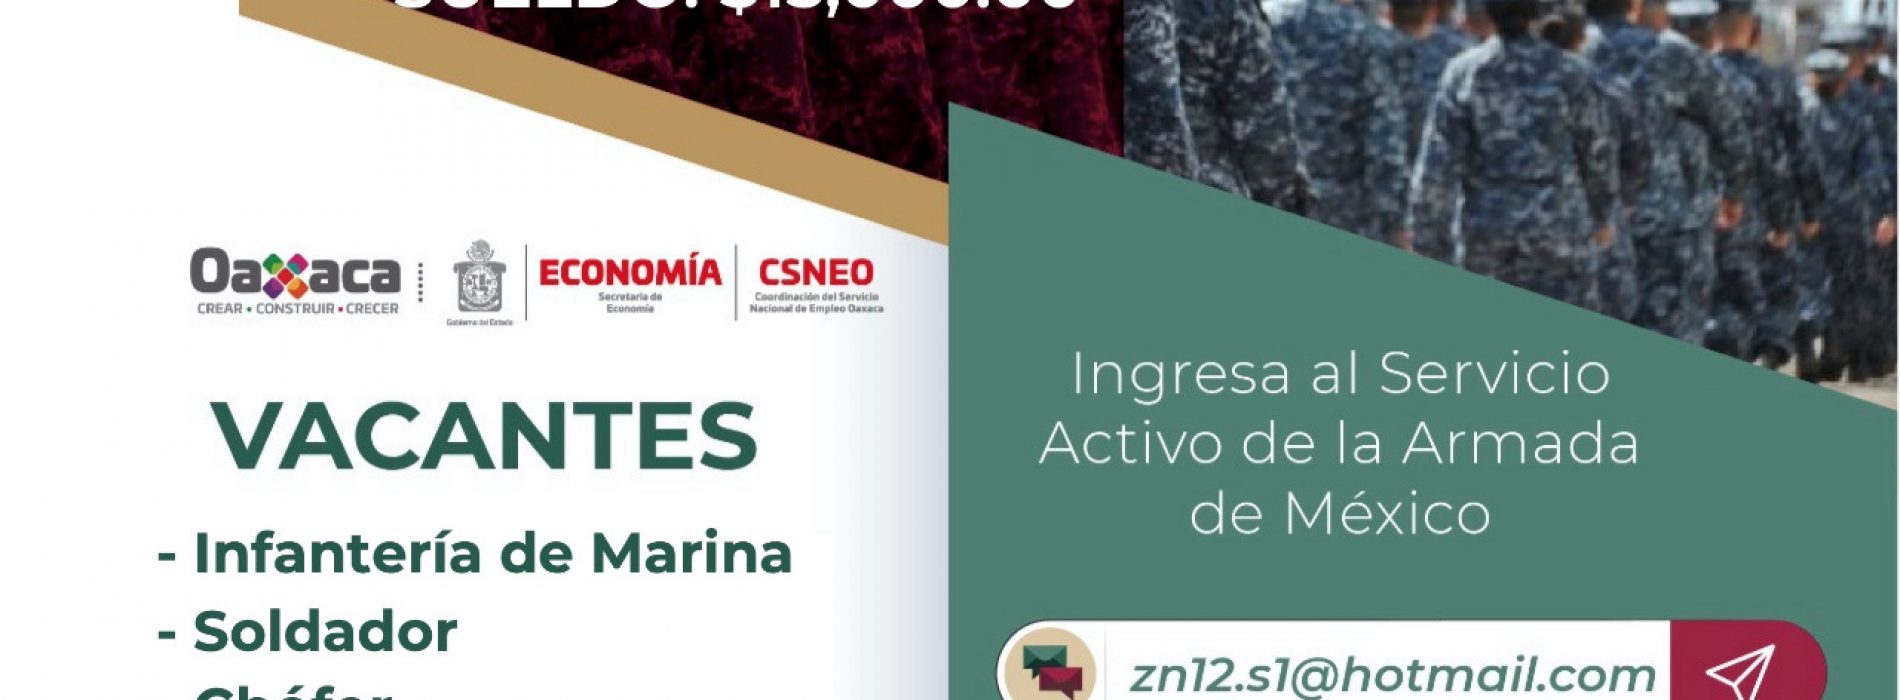 Oferta Secretaría de Marina más de 250 vacantes de empleo en el Istmo de Tehuantepec